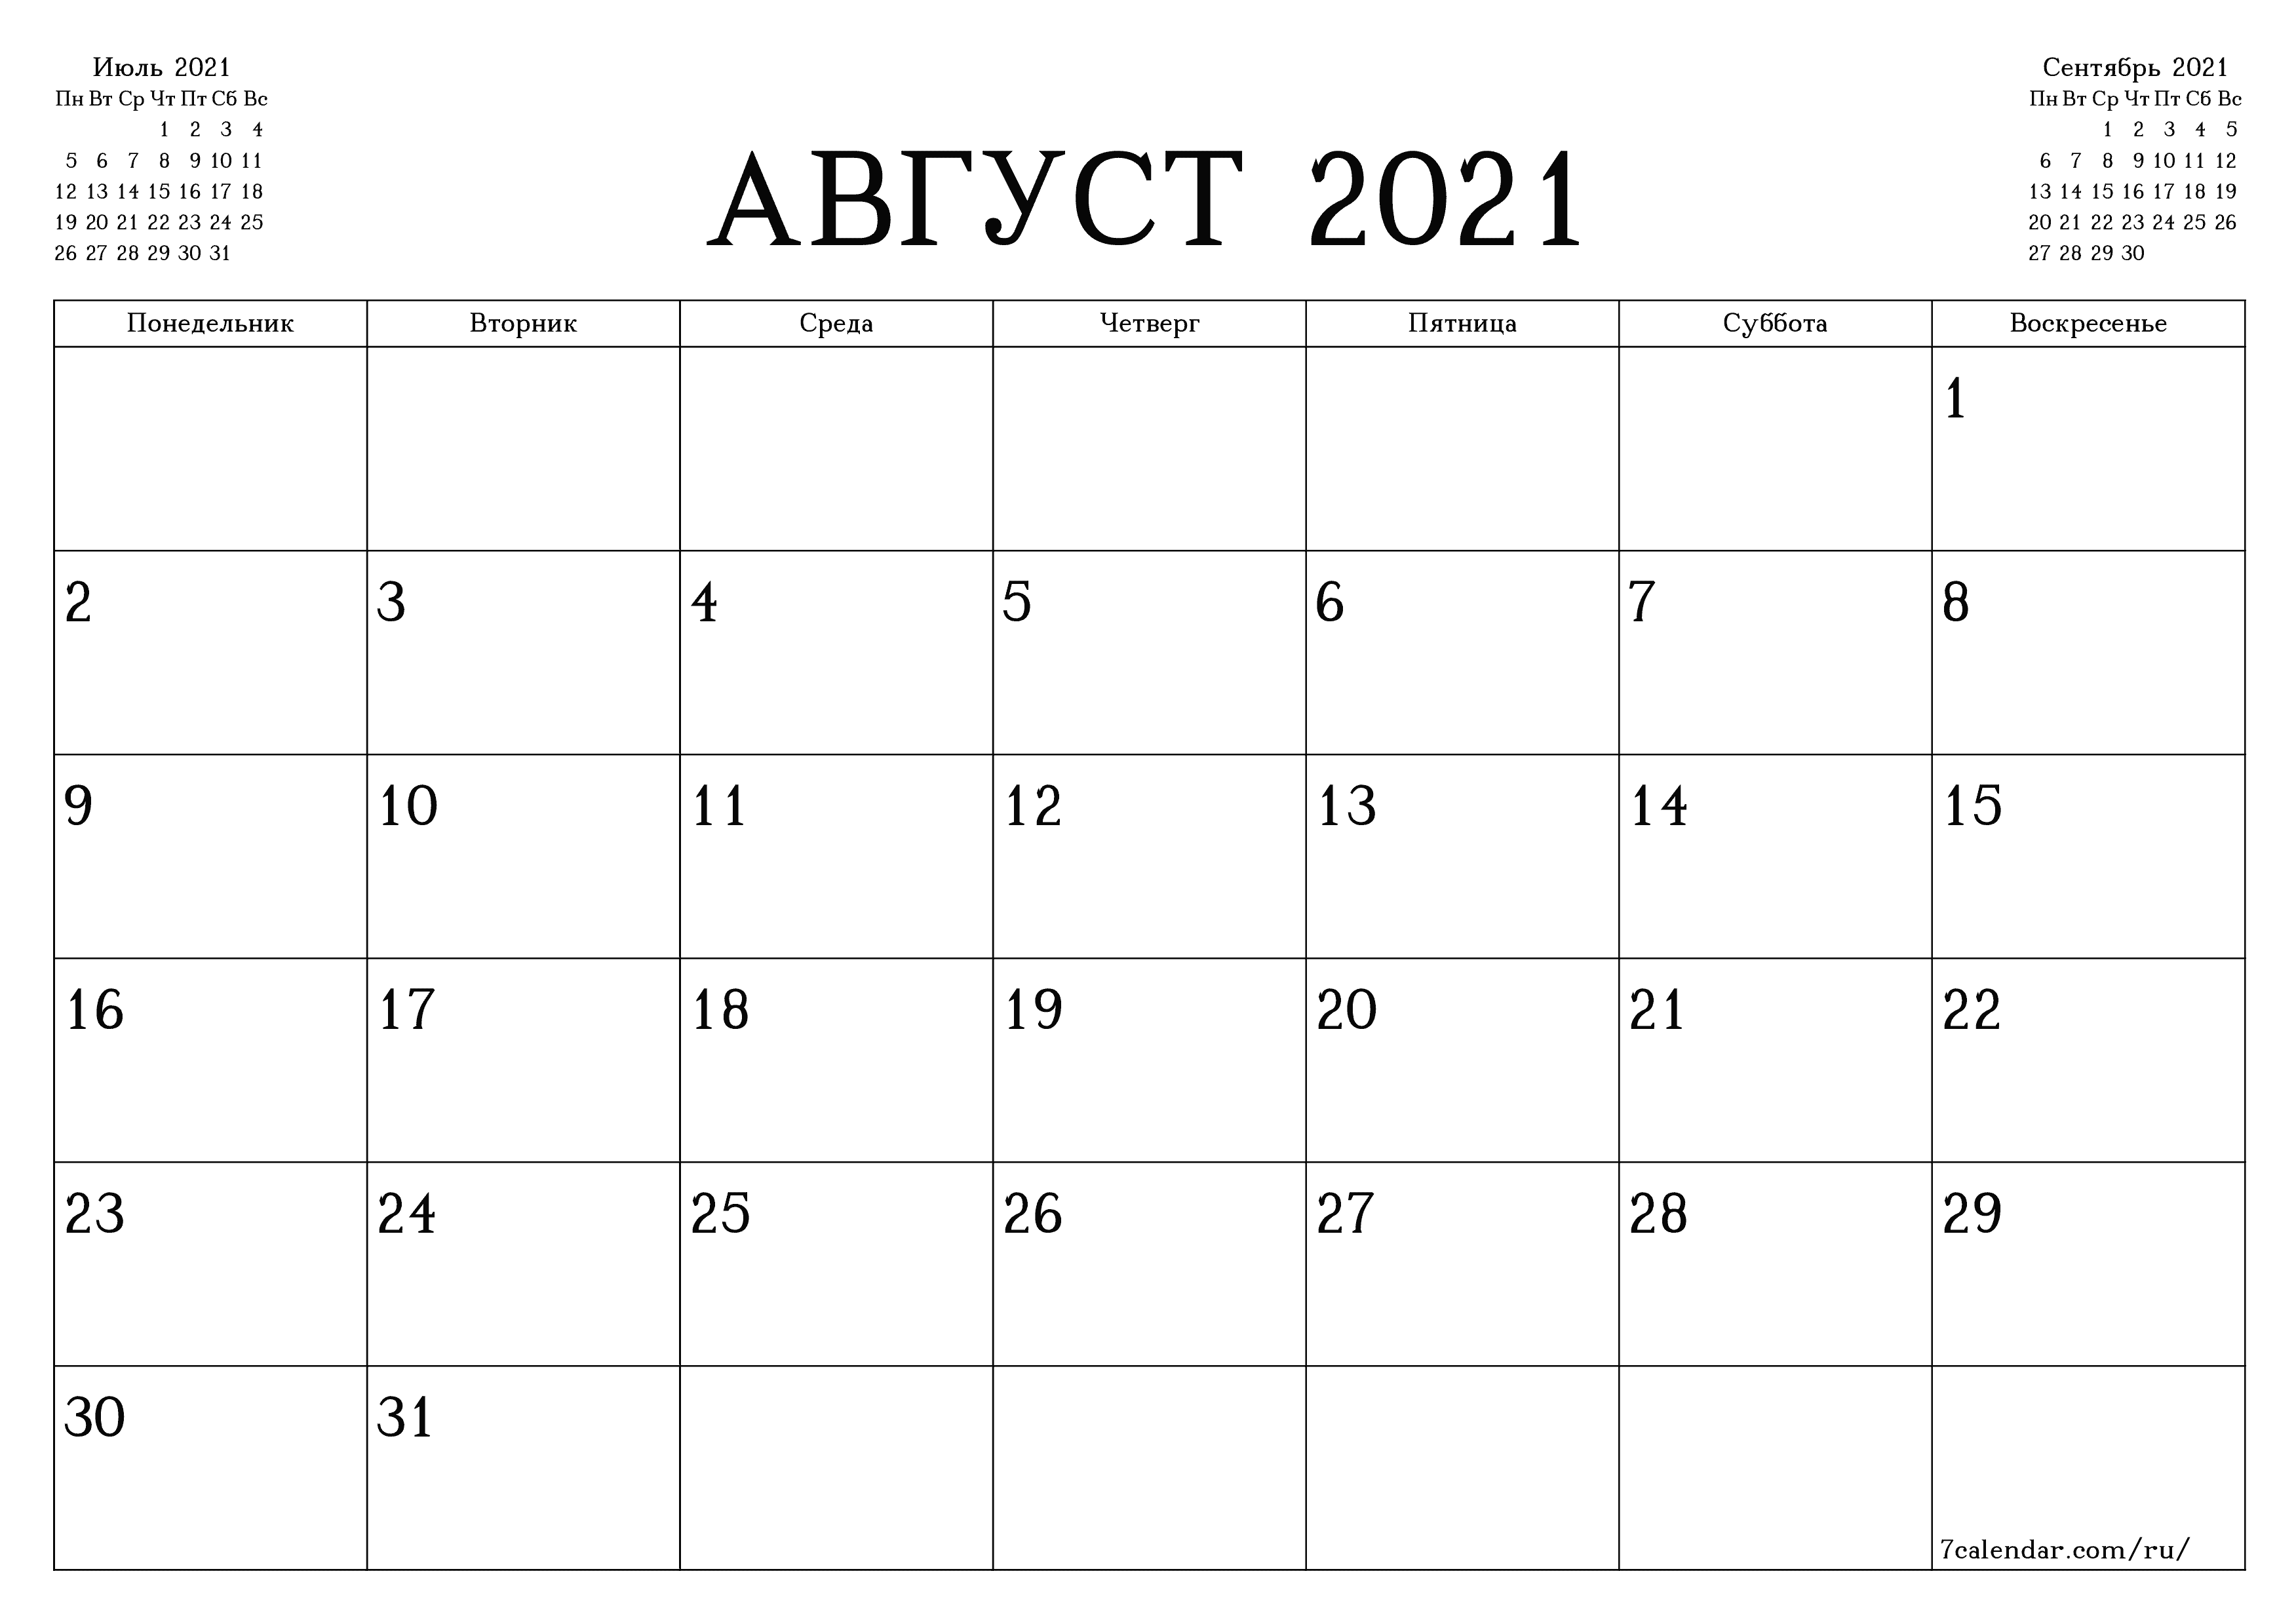 Пустой ежемесячный календарь-планер на месяц Август 2021